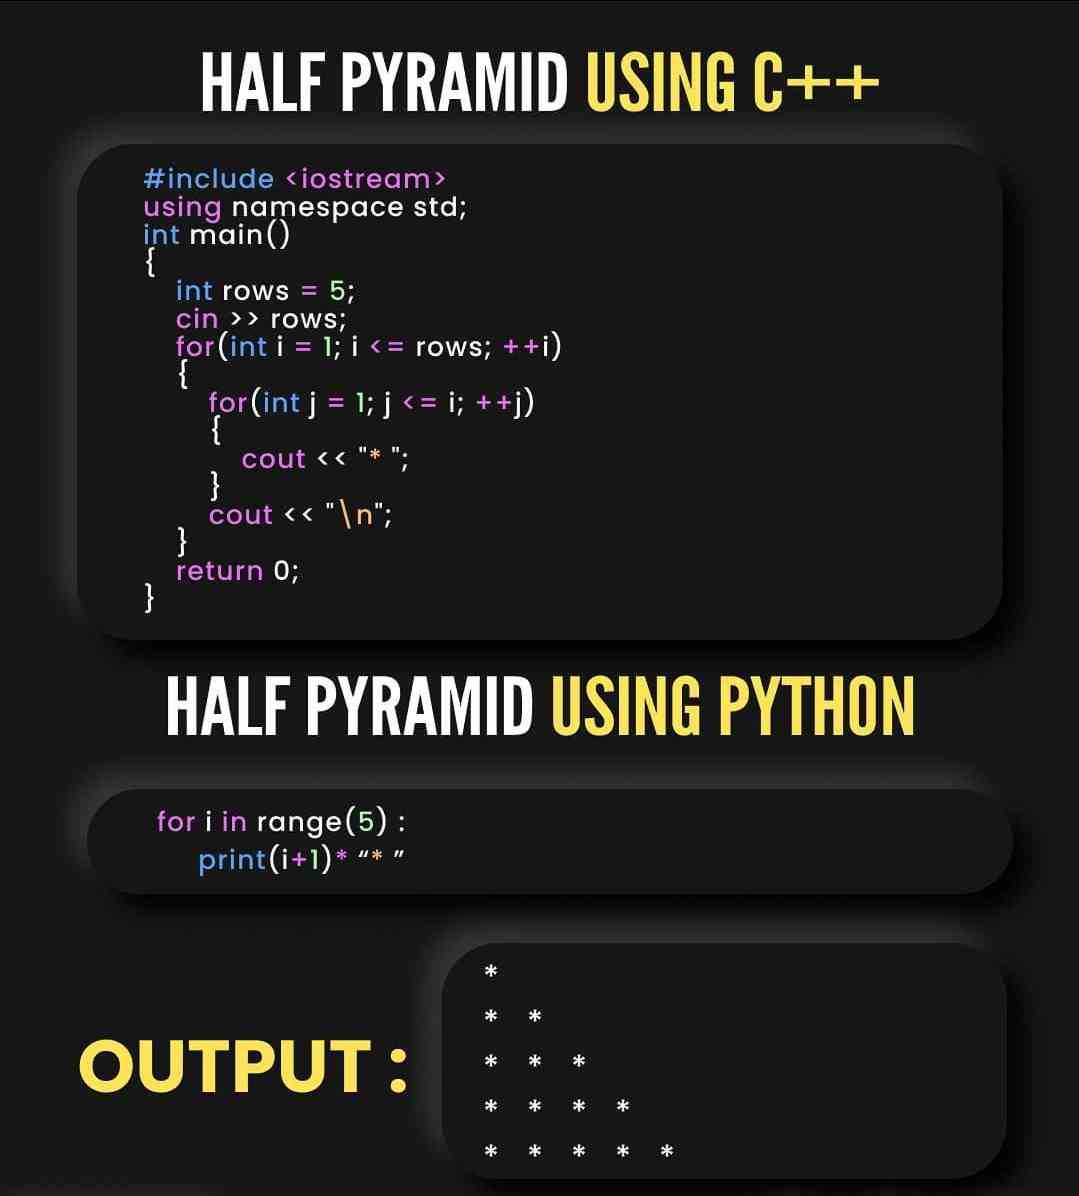 Half pyramids using C++ vs Half pyramids using Python